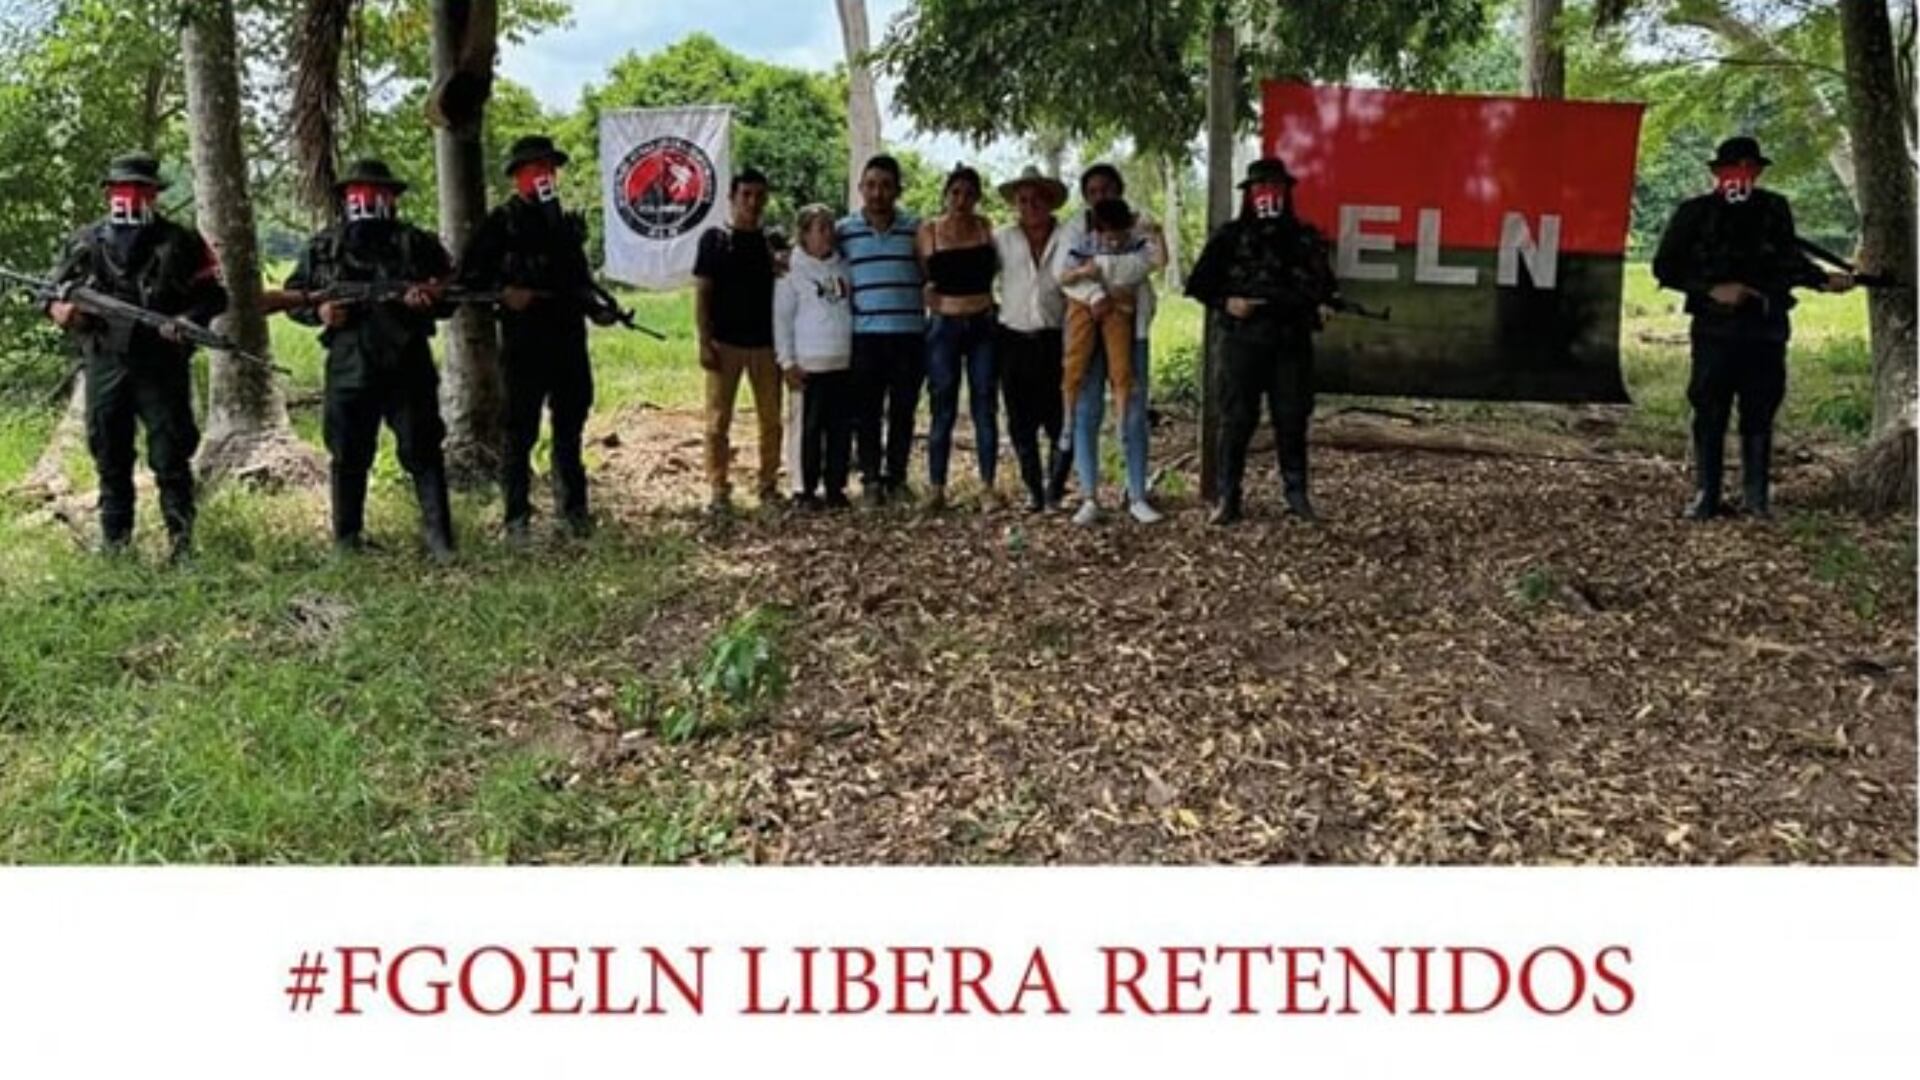 El grupo guerrillero confirmó que los secuestrados ya se encuentran con sus familiares - crédito ELN/ Redes sociales